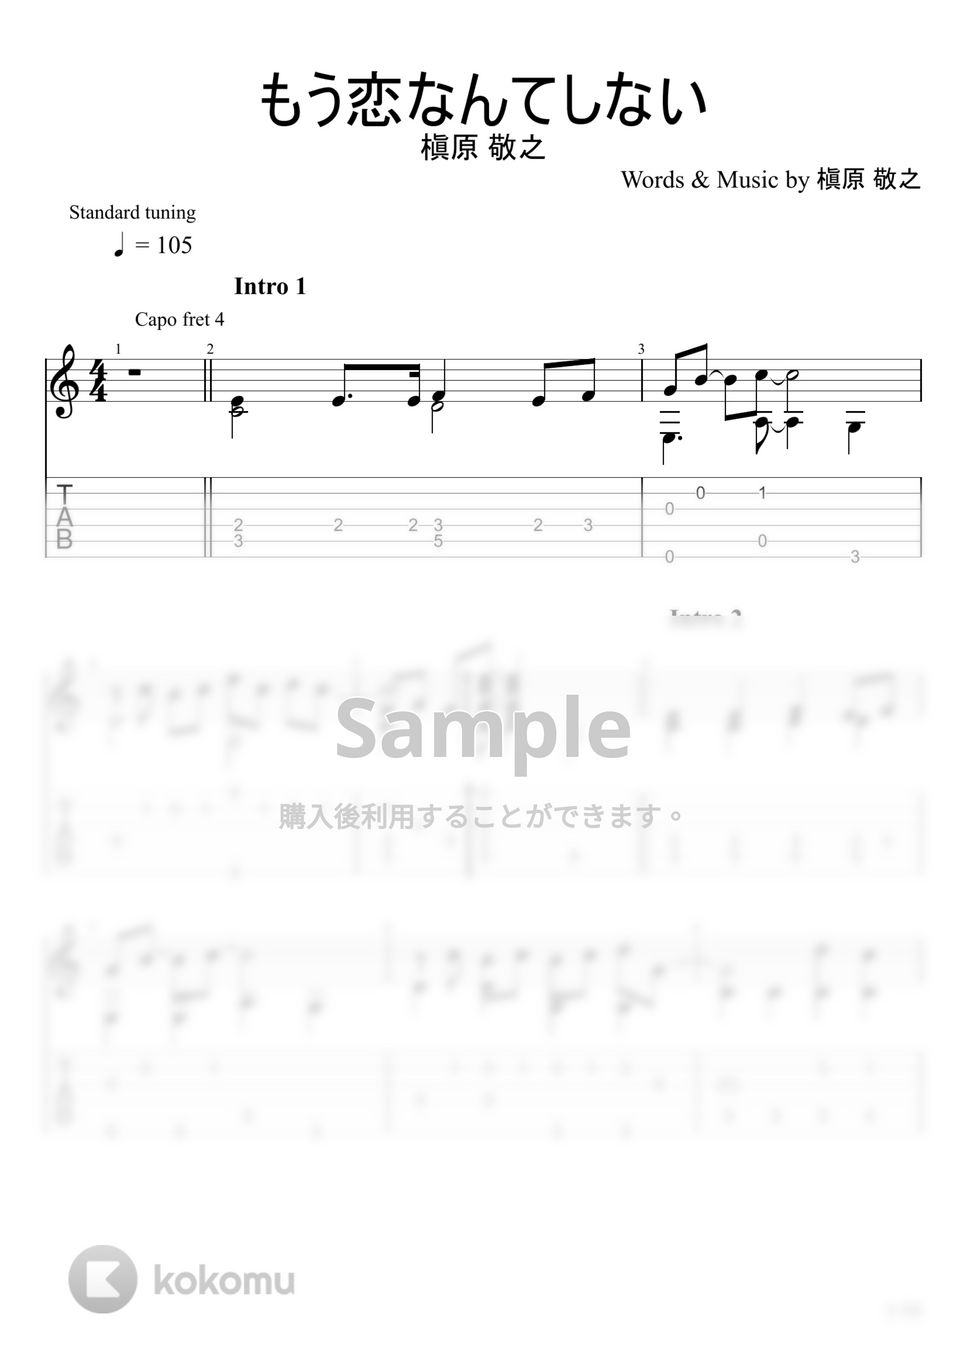 槇原敬之 - もう恋なんてしない (ソロギター) by u3danchou